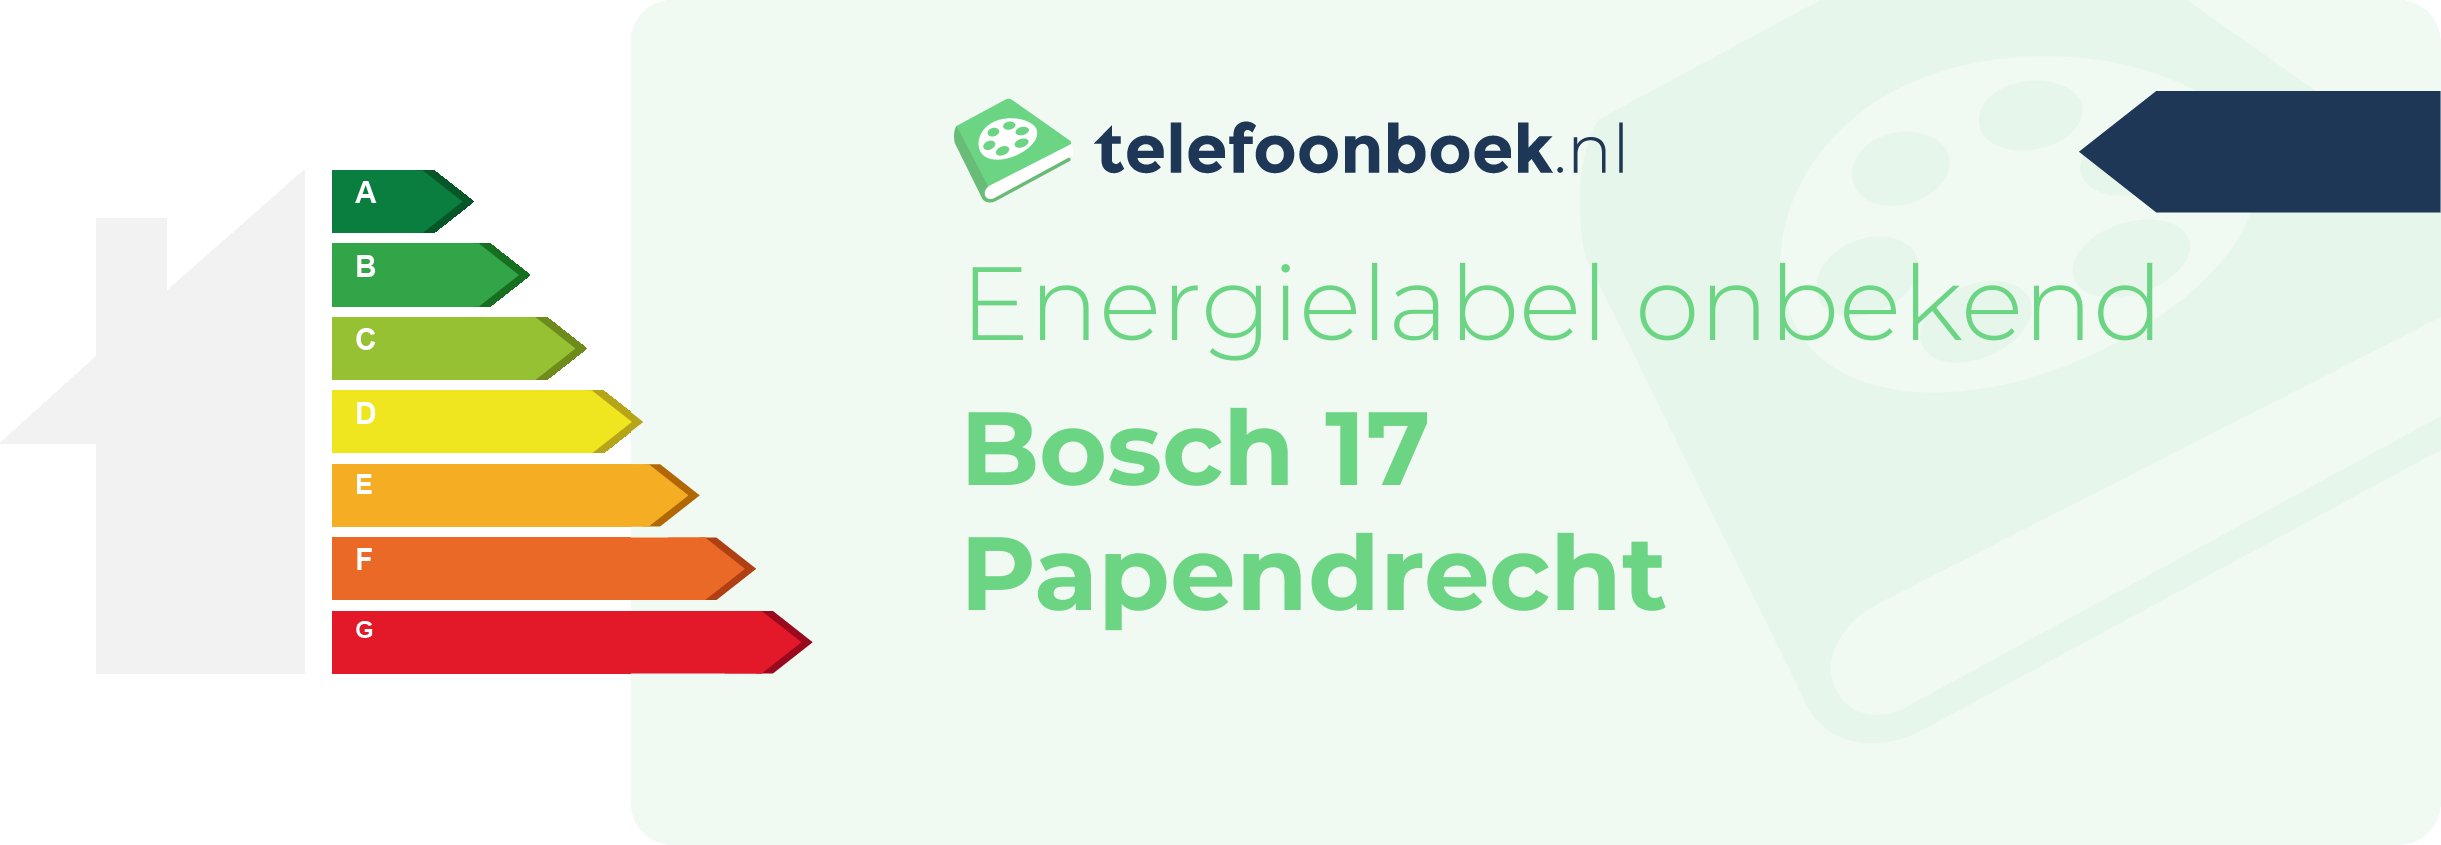 Energielabel Bosch 17 Papendrecht